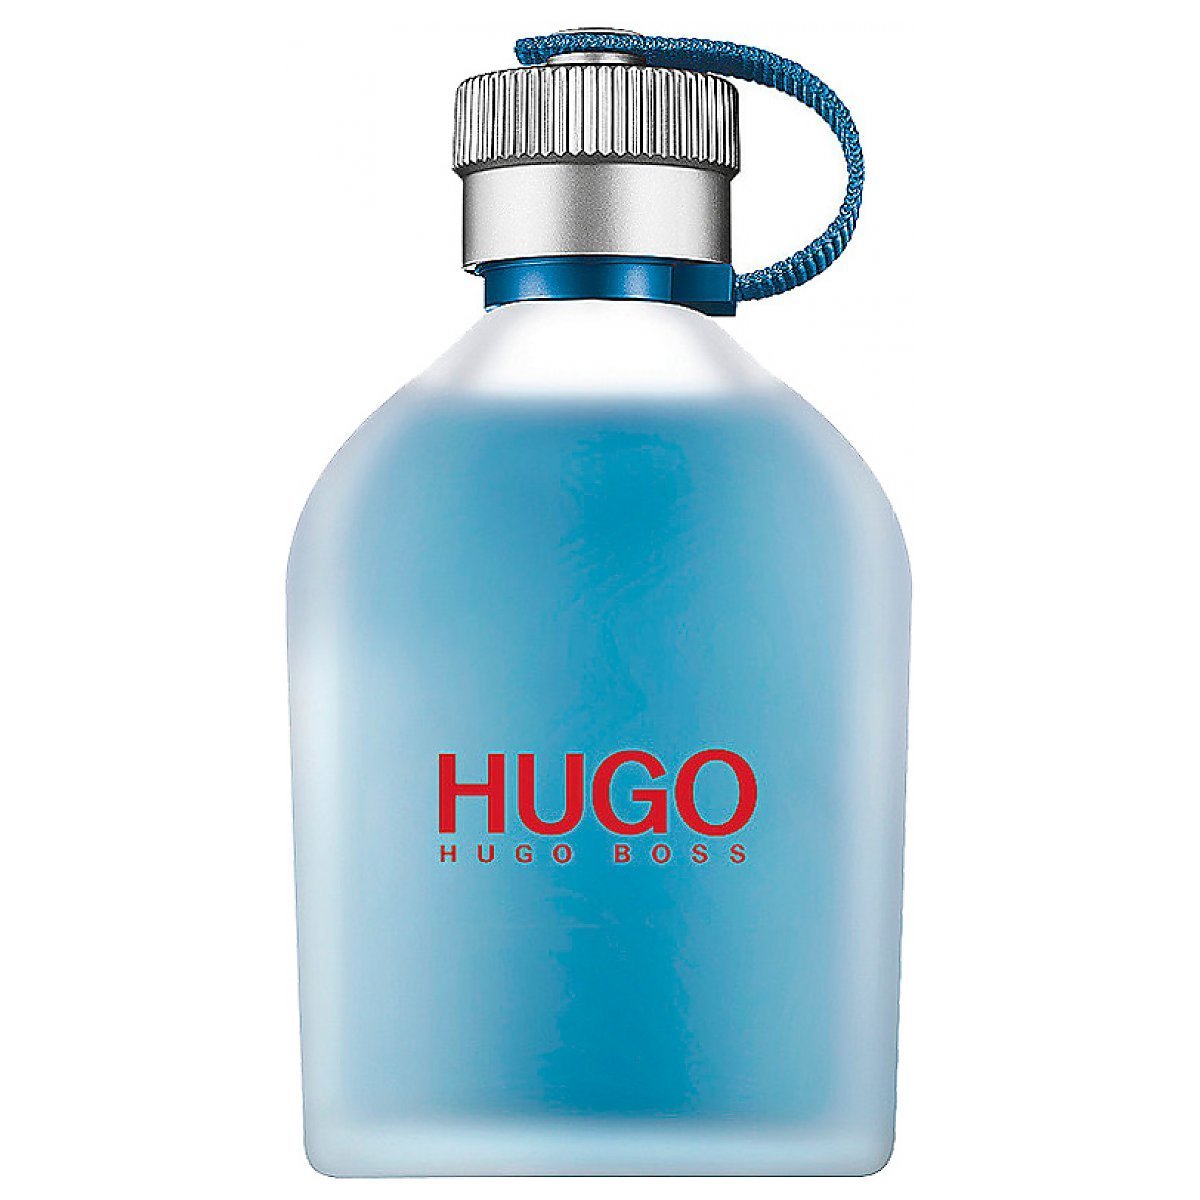 Hugo Boss HUGO Now Woda toaletowa spray 75ml - Perfumeria Dolce.pl